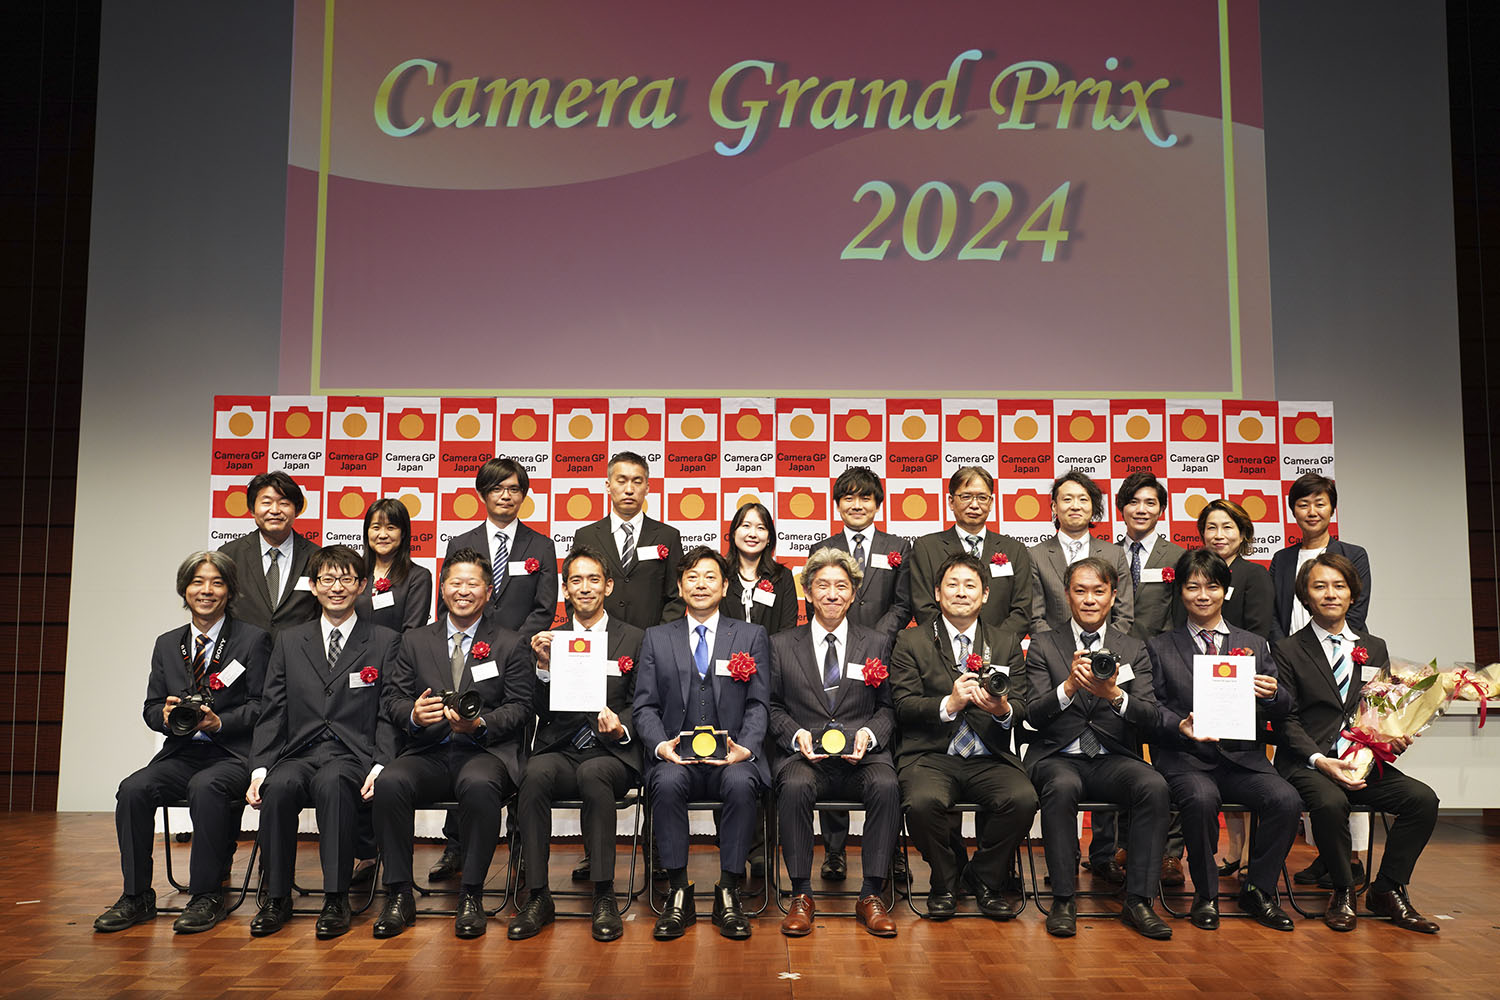 gruppo dei vincitori al camera grand prix 2024